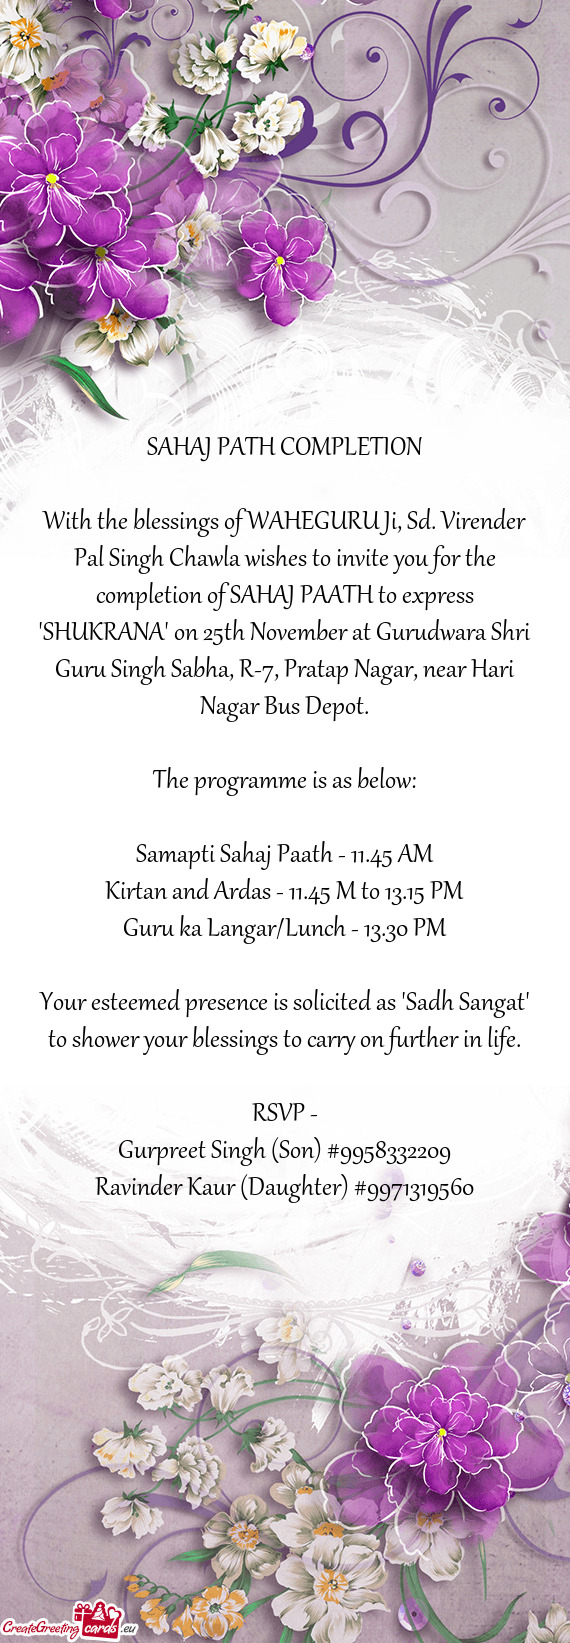 Tion of SAHAJ PAATH to express "SHUKRANA" on 25th November at Gurudwara Shri Guru Singh Sabha, R-7